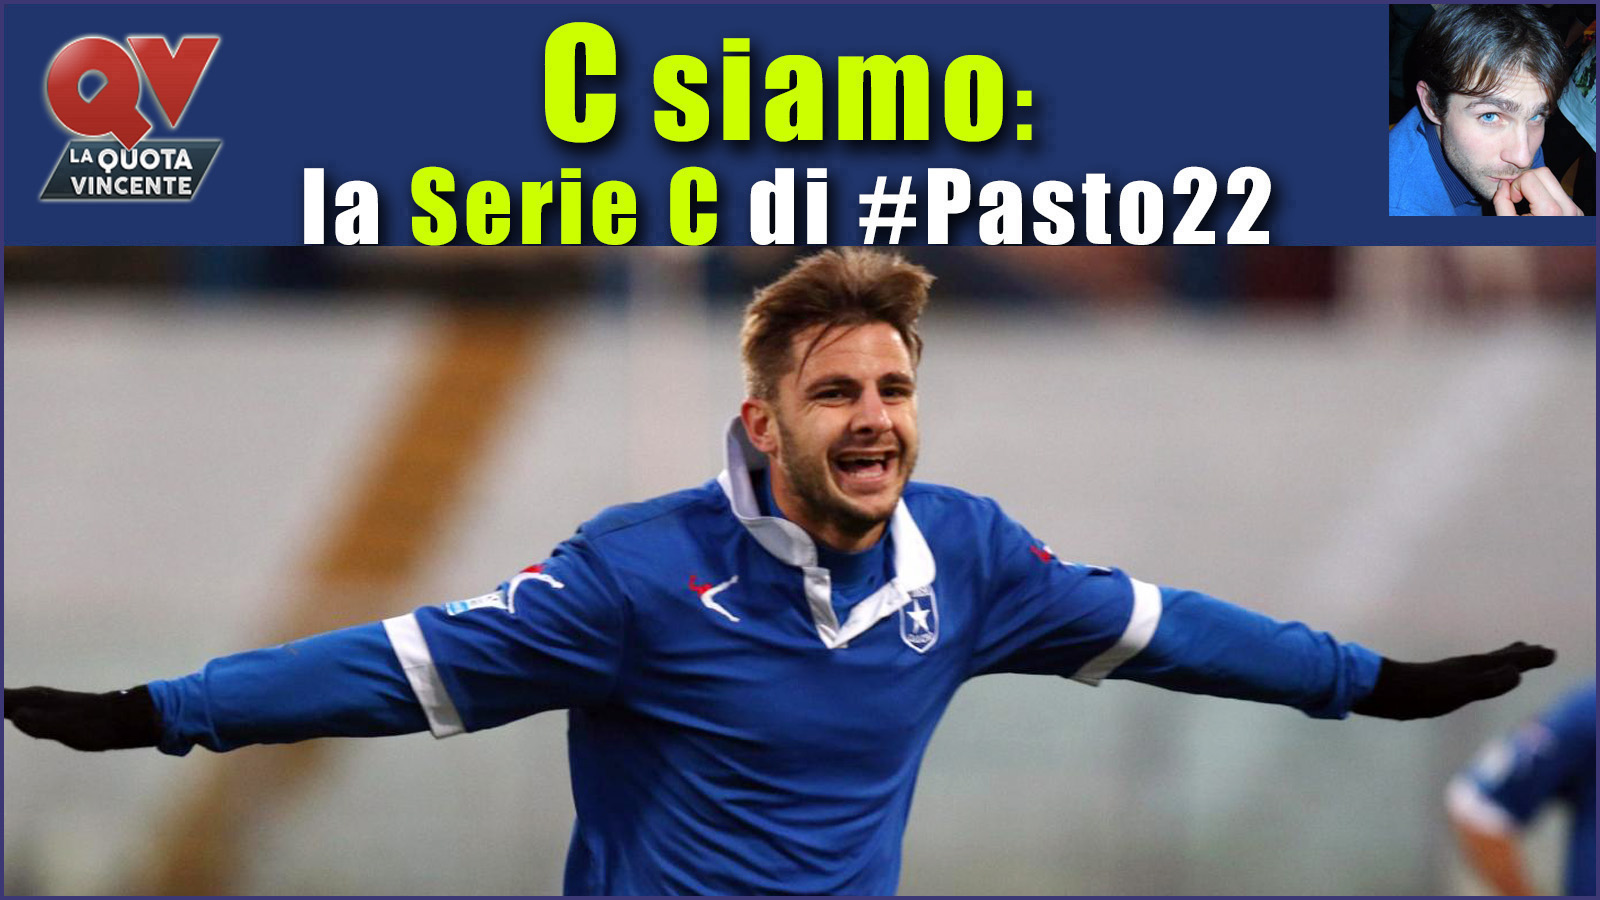 Pronostici Serie C domenica 10 dicembre: #Csiamo, il blog di #Pasto22